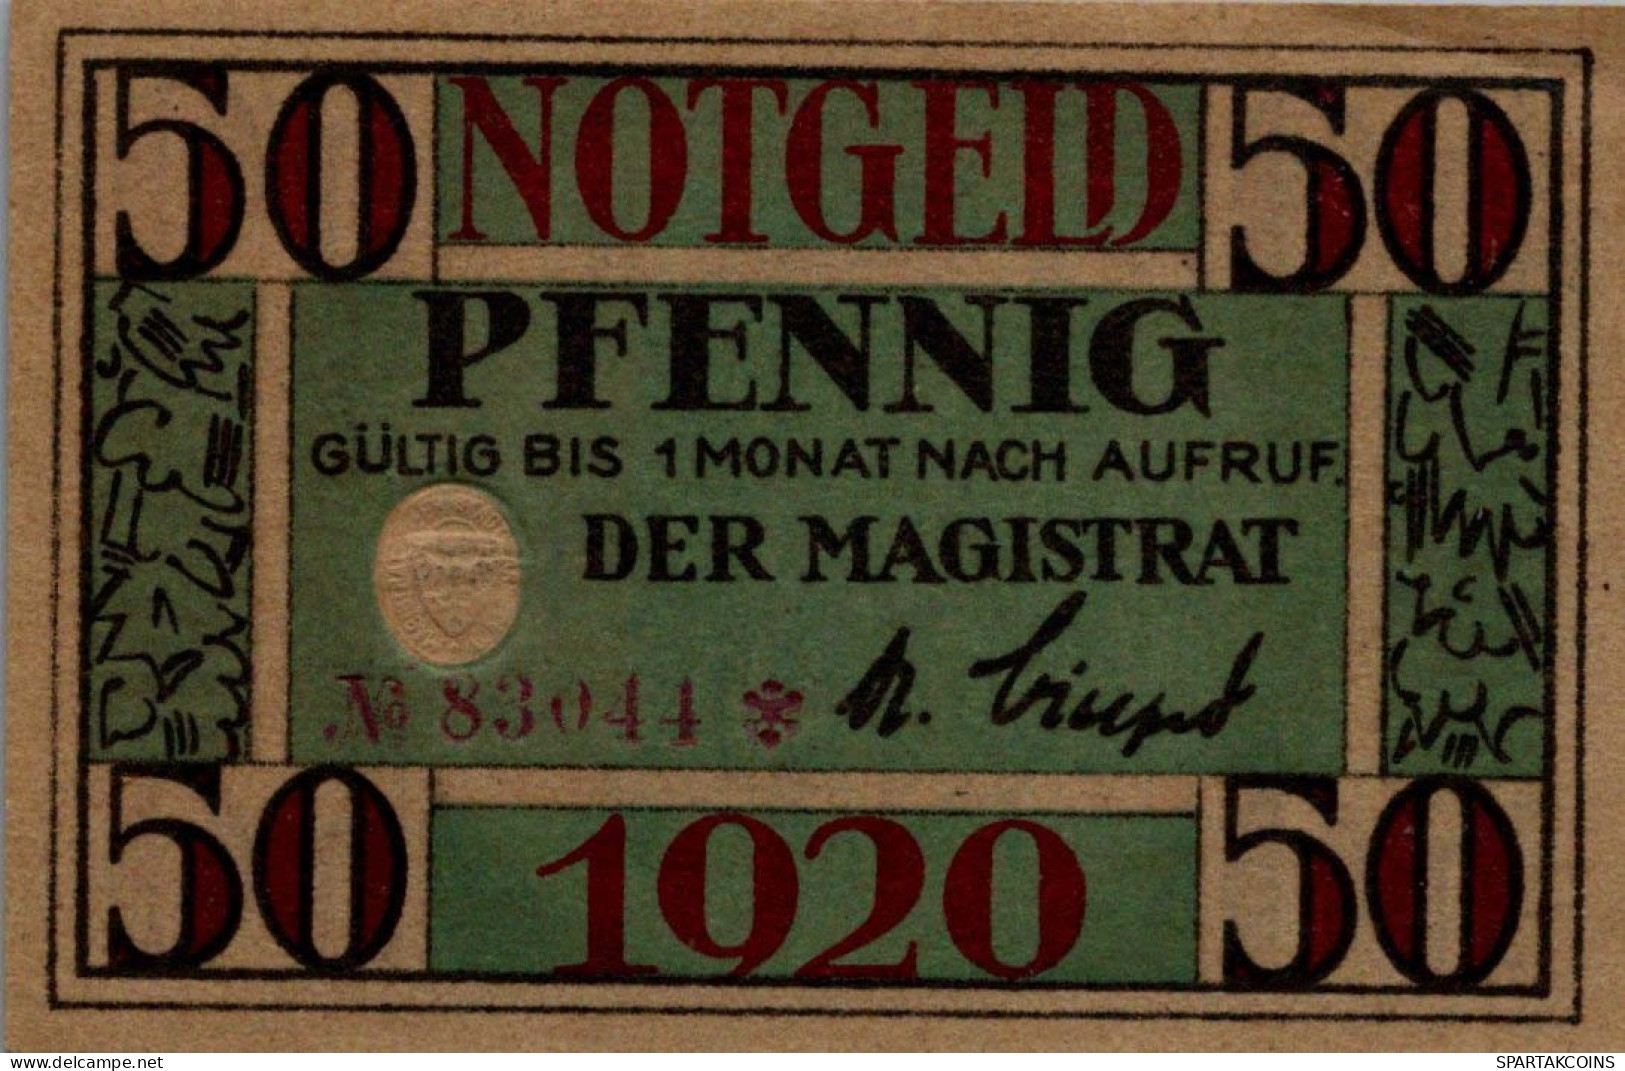 50 PFENNIG 1920 Stadt ARNSTADT Thuringia UNC DEUTSCHLAND Notgeld Banknote #PC336 - [11] Local Banknote Issues